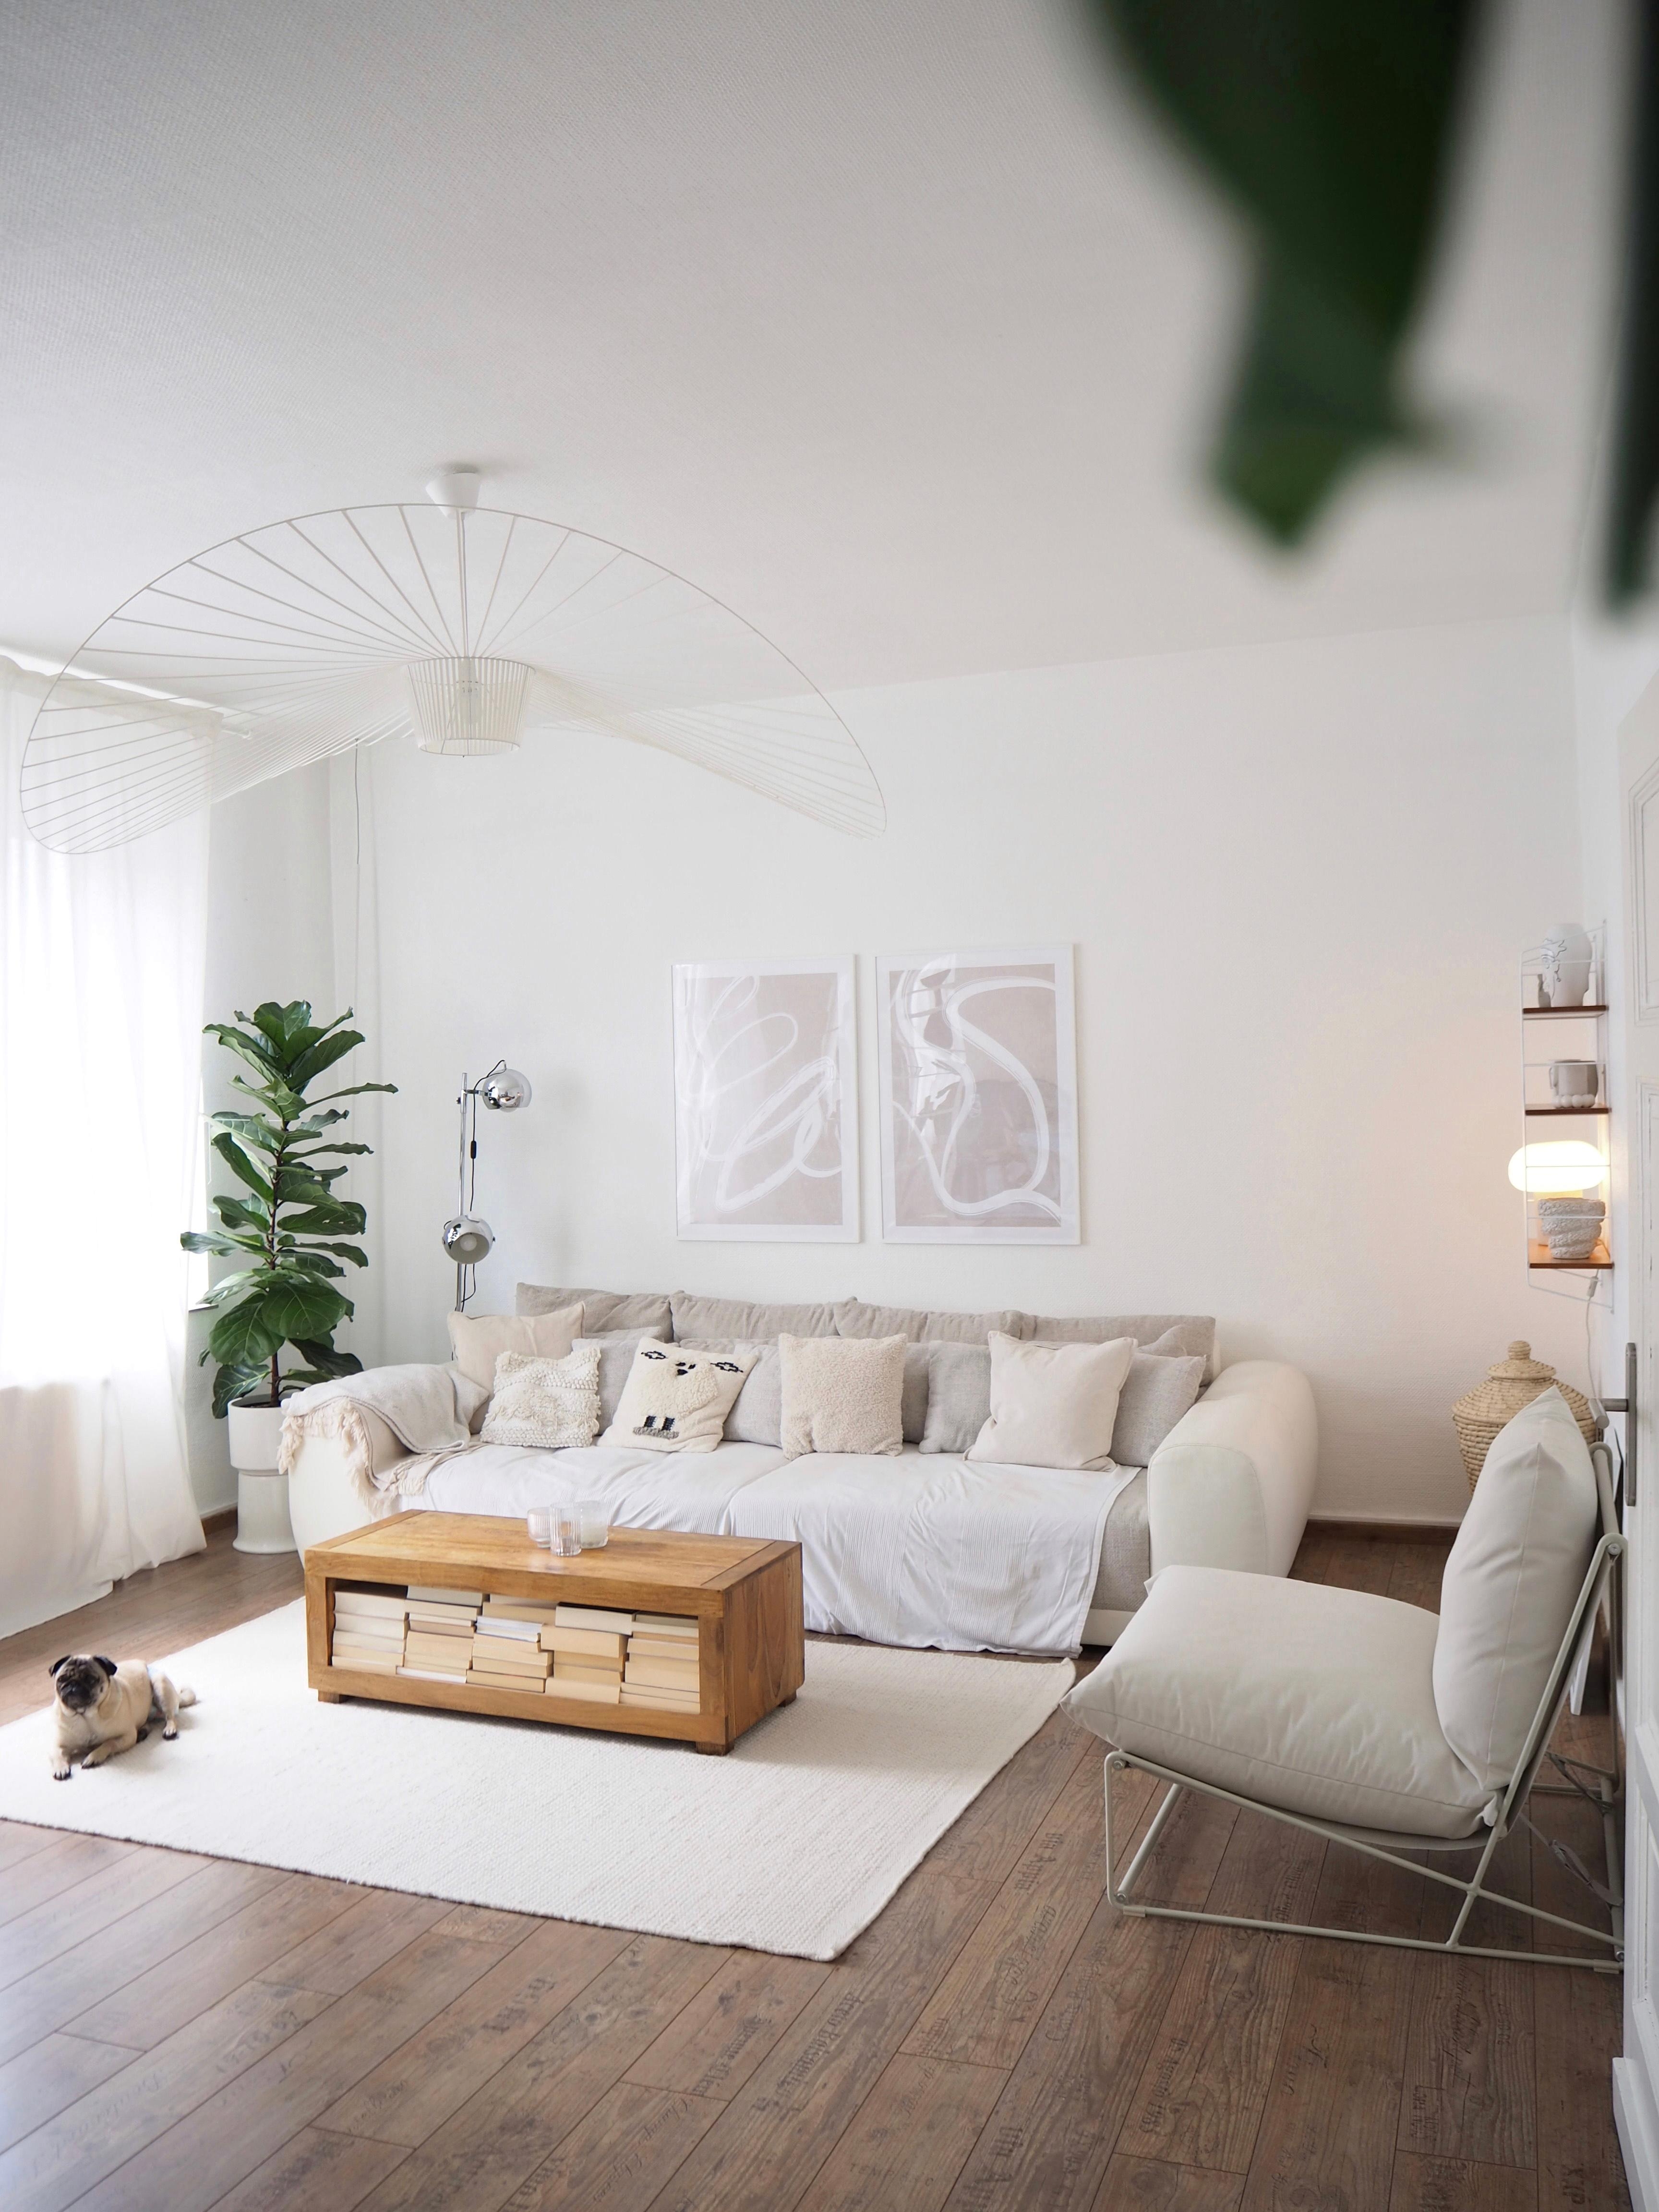 #wohnzimmer #couchtisch #sofa #weiß #skandi #altbau #bilder
#ikea #lampen #pflanze #teppich #deko #dekoideen #wohnraum 